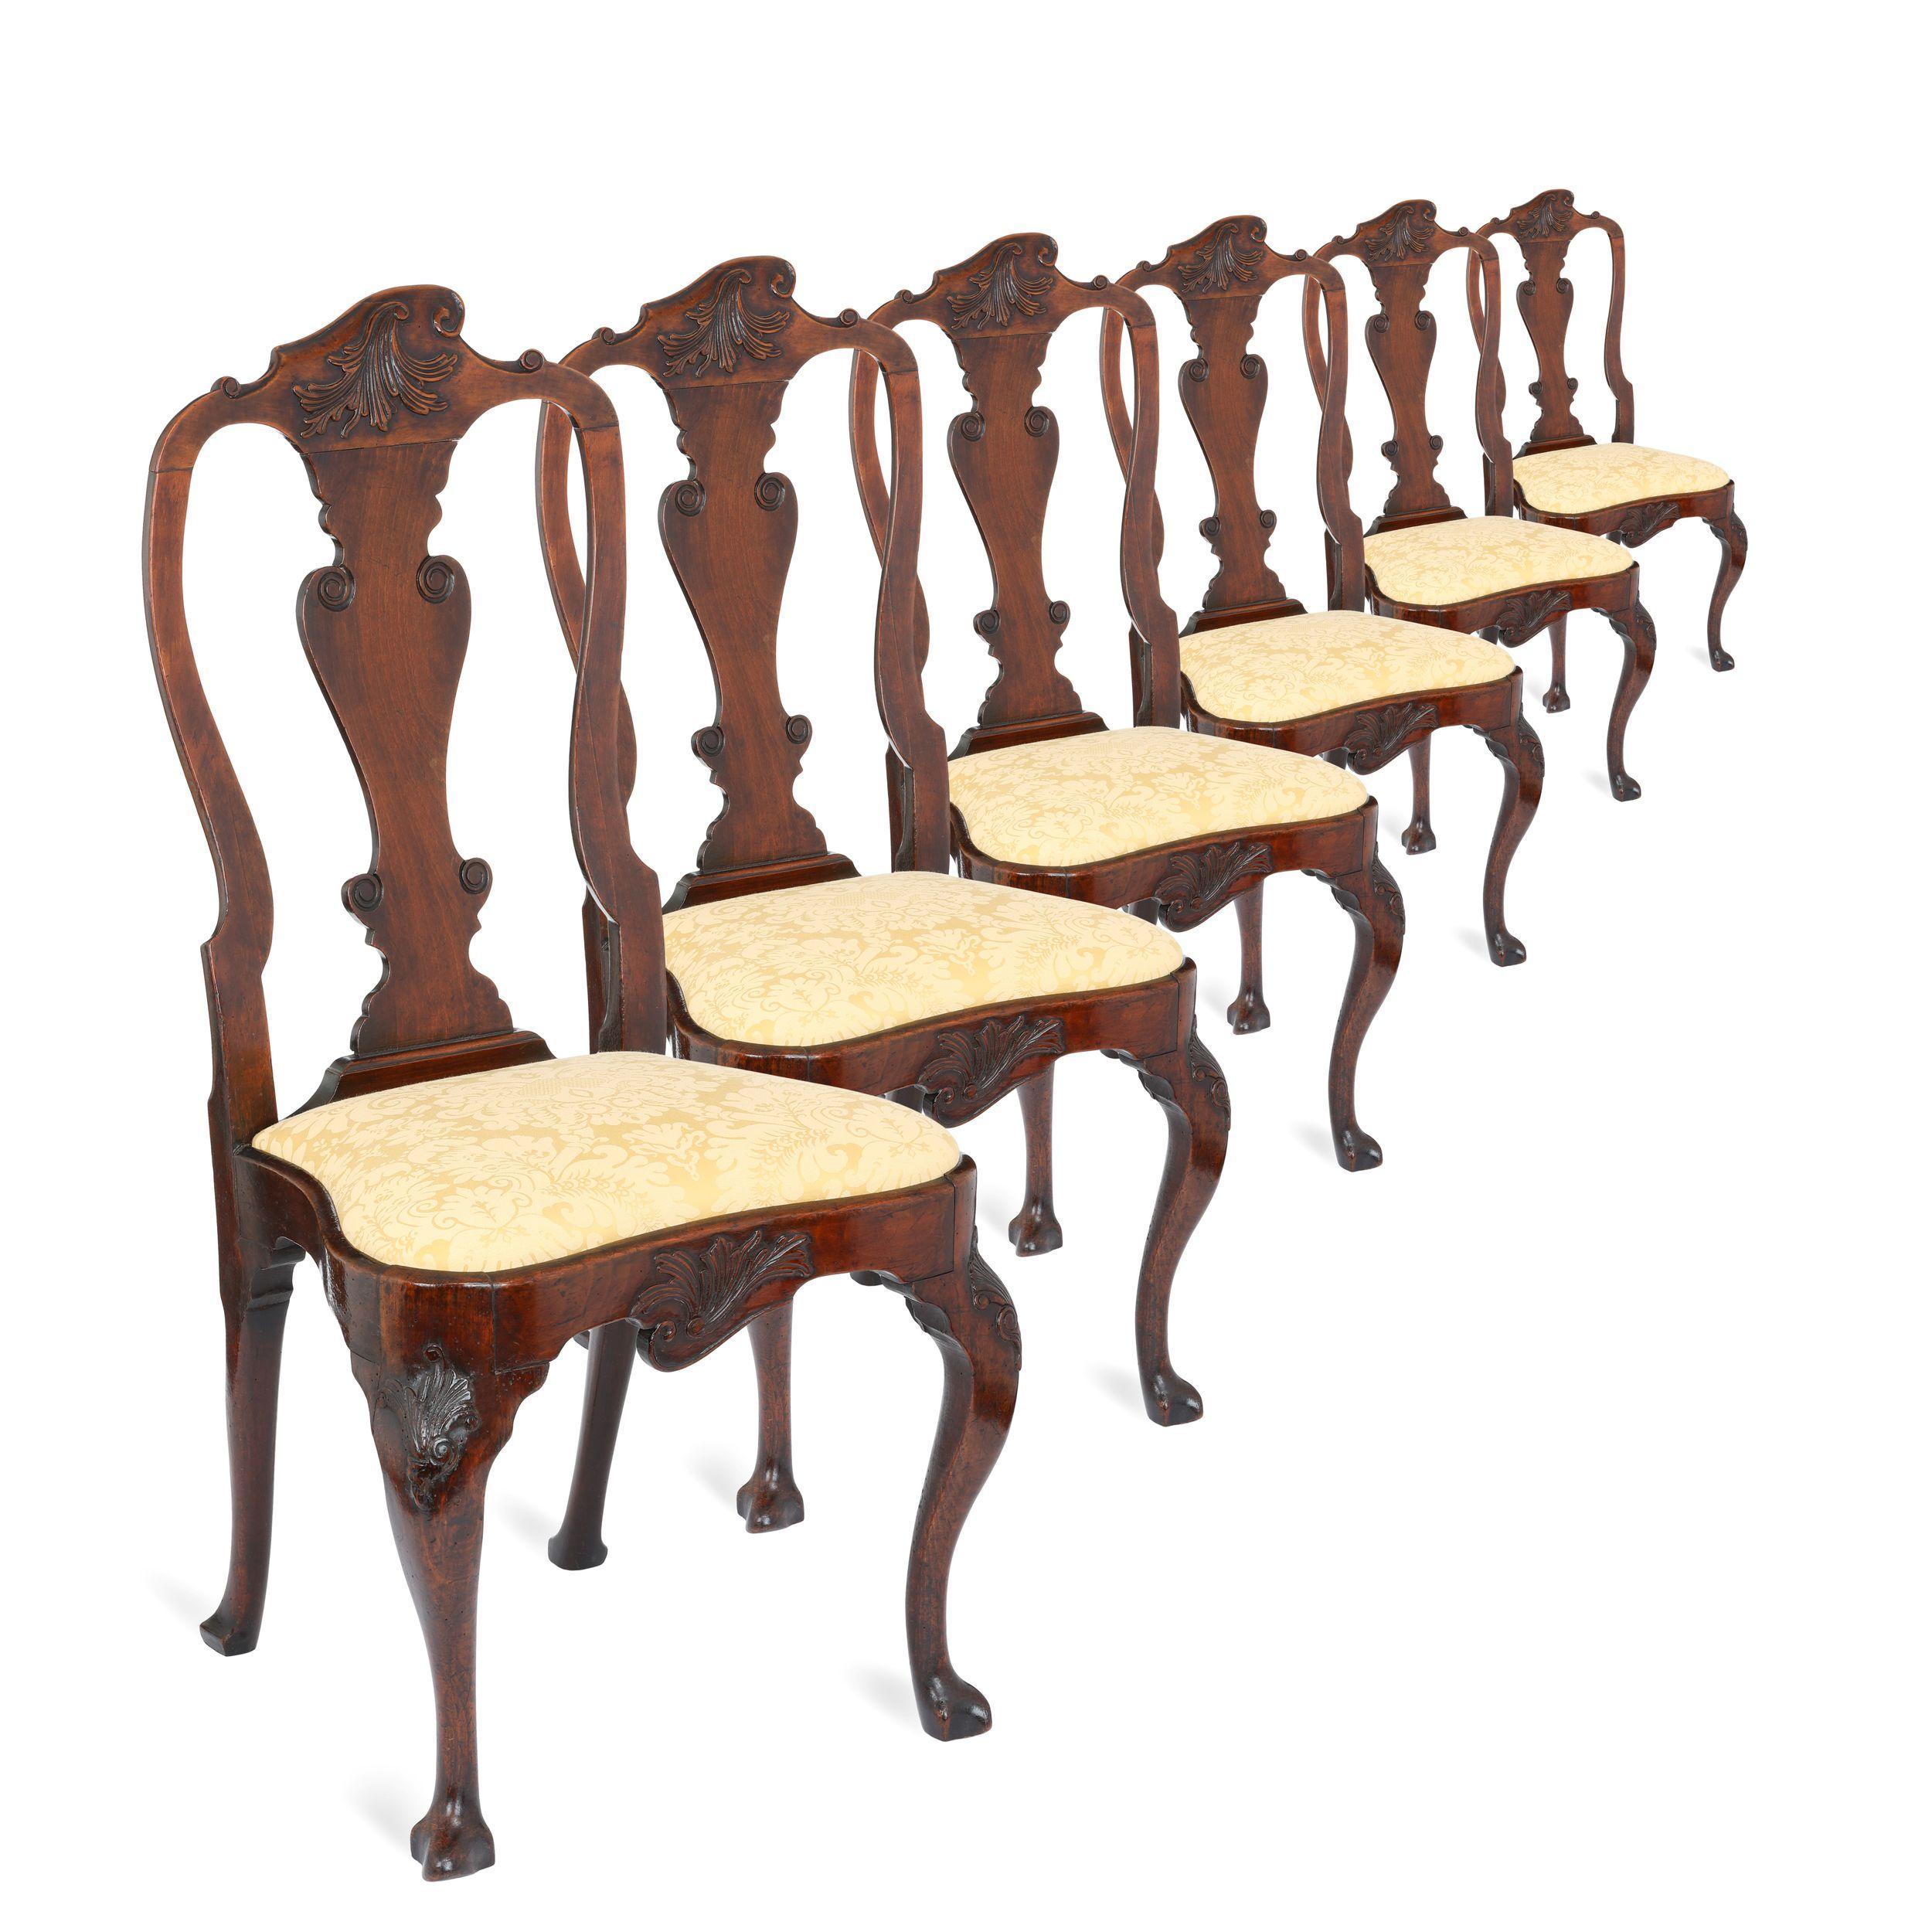 Un ensemble extrêmement rare de six chaises de salle à manger George II en noyer massif sur des pieds cabriole sculptés et d'un design extrêmement rare. Les dossiers présentent des motifs asymétriques sculptés de volutes au sommet des dossiers, qui